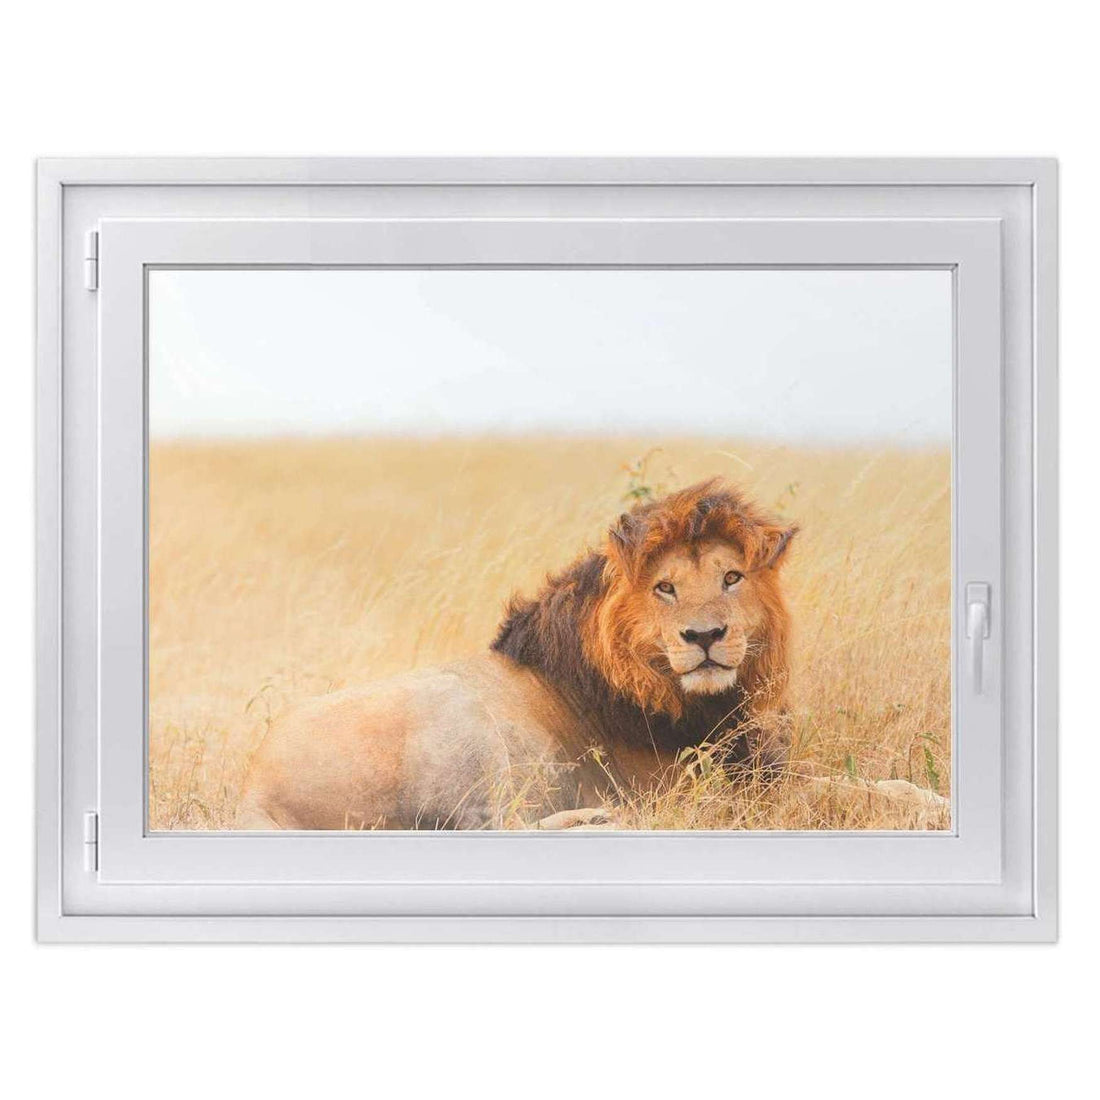 Fensterfolie [quer] -Lion King- Größe: 100x70 cm